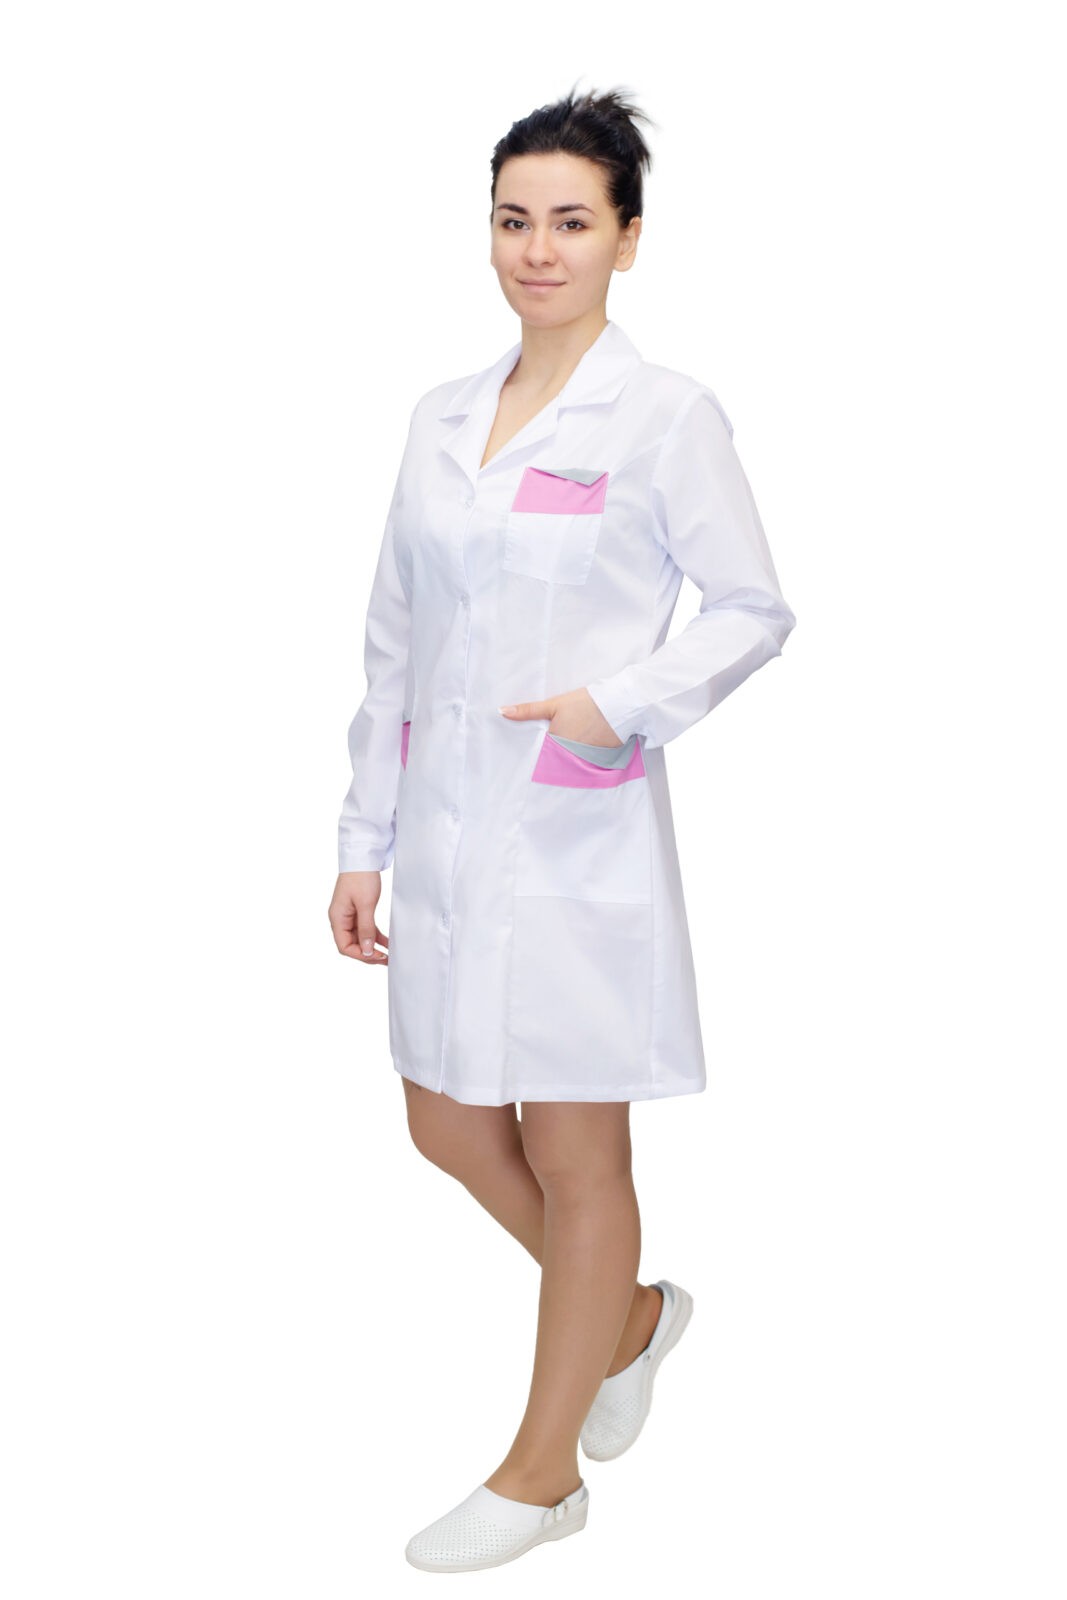 Халат медицинский женский (белый/розовый) ткань ТиСи, код 40700